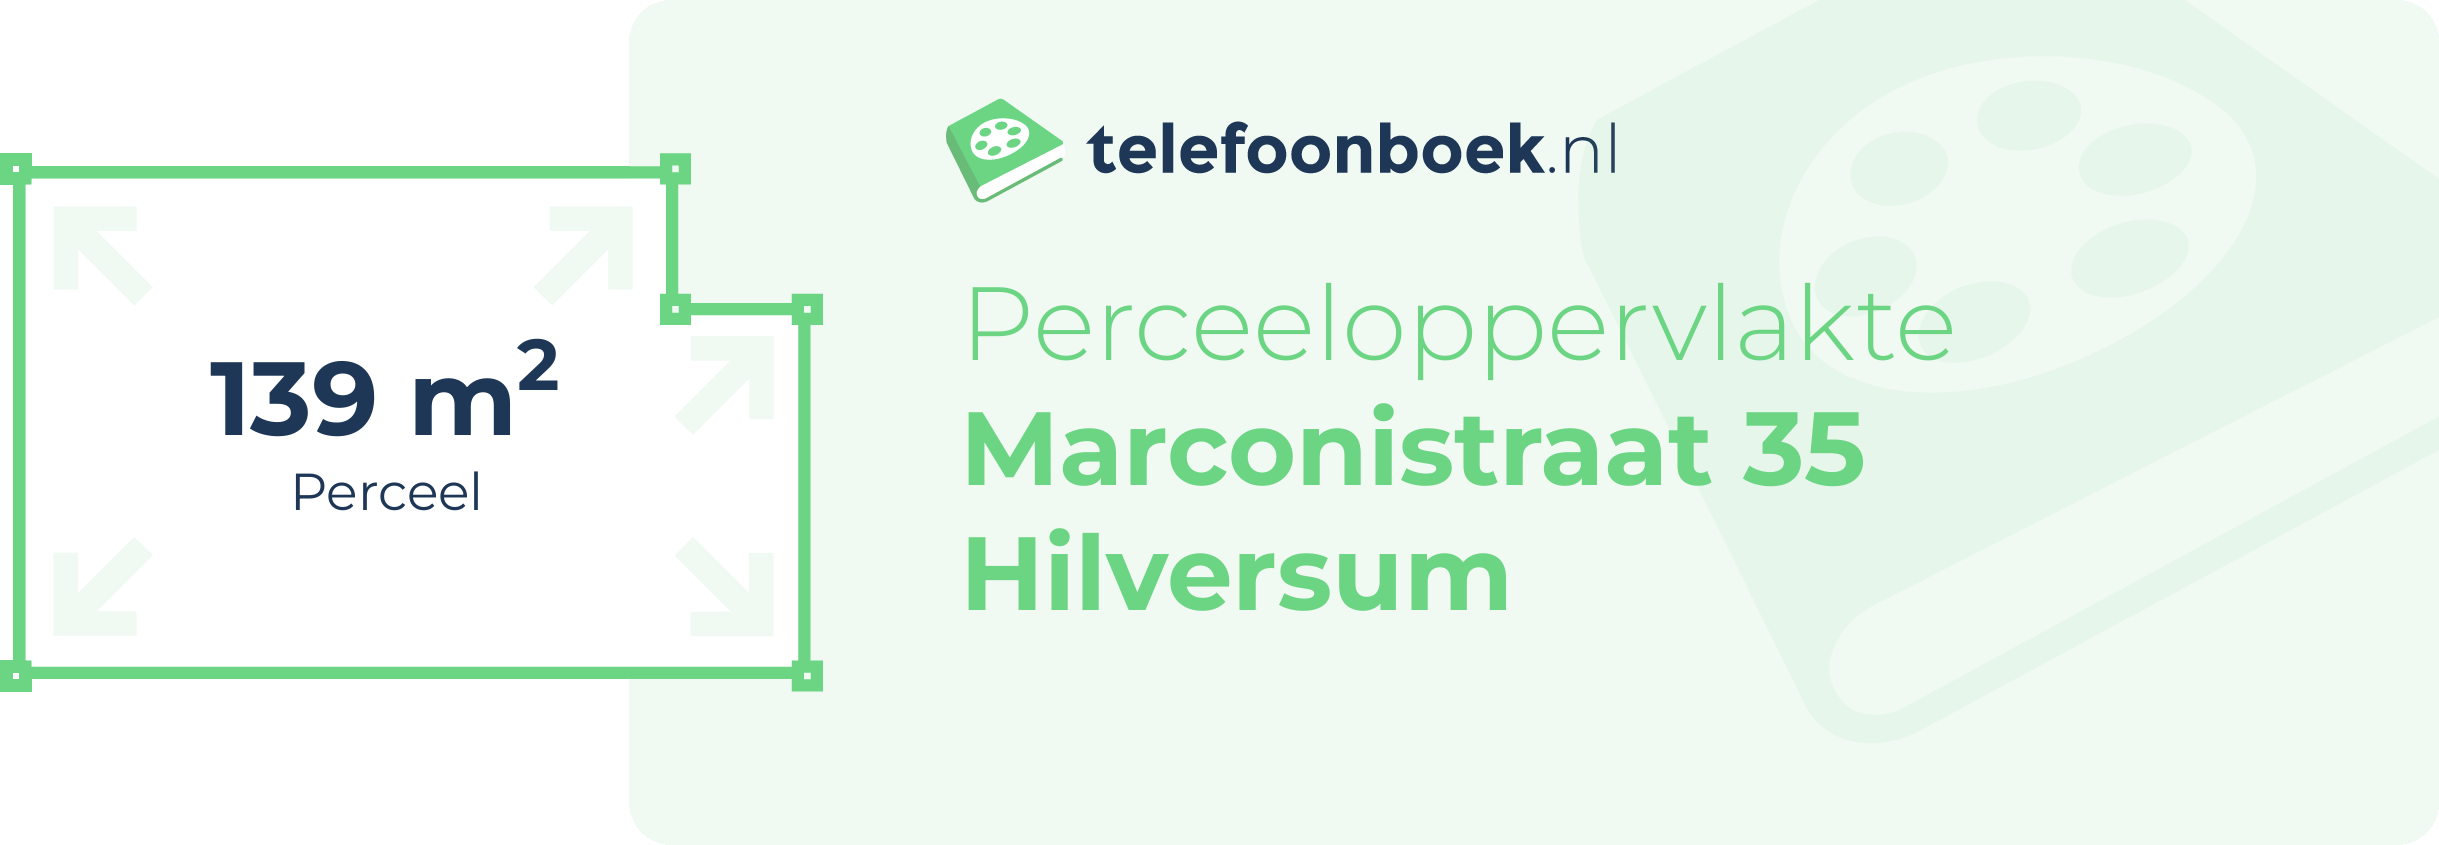 Perceeloppervlakte Marconistraat 35 Hilversum